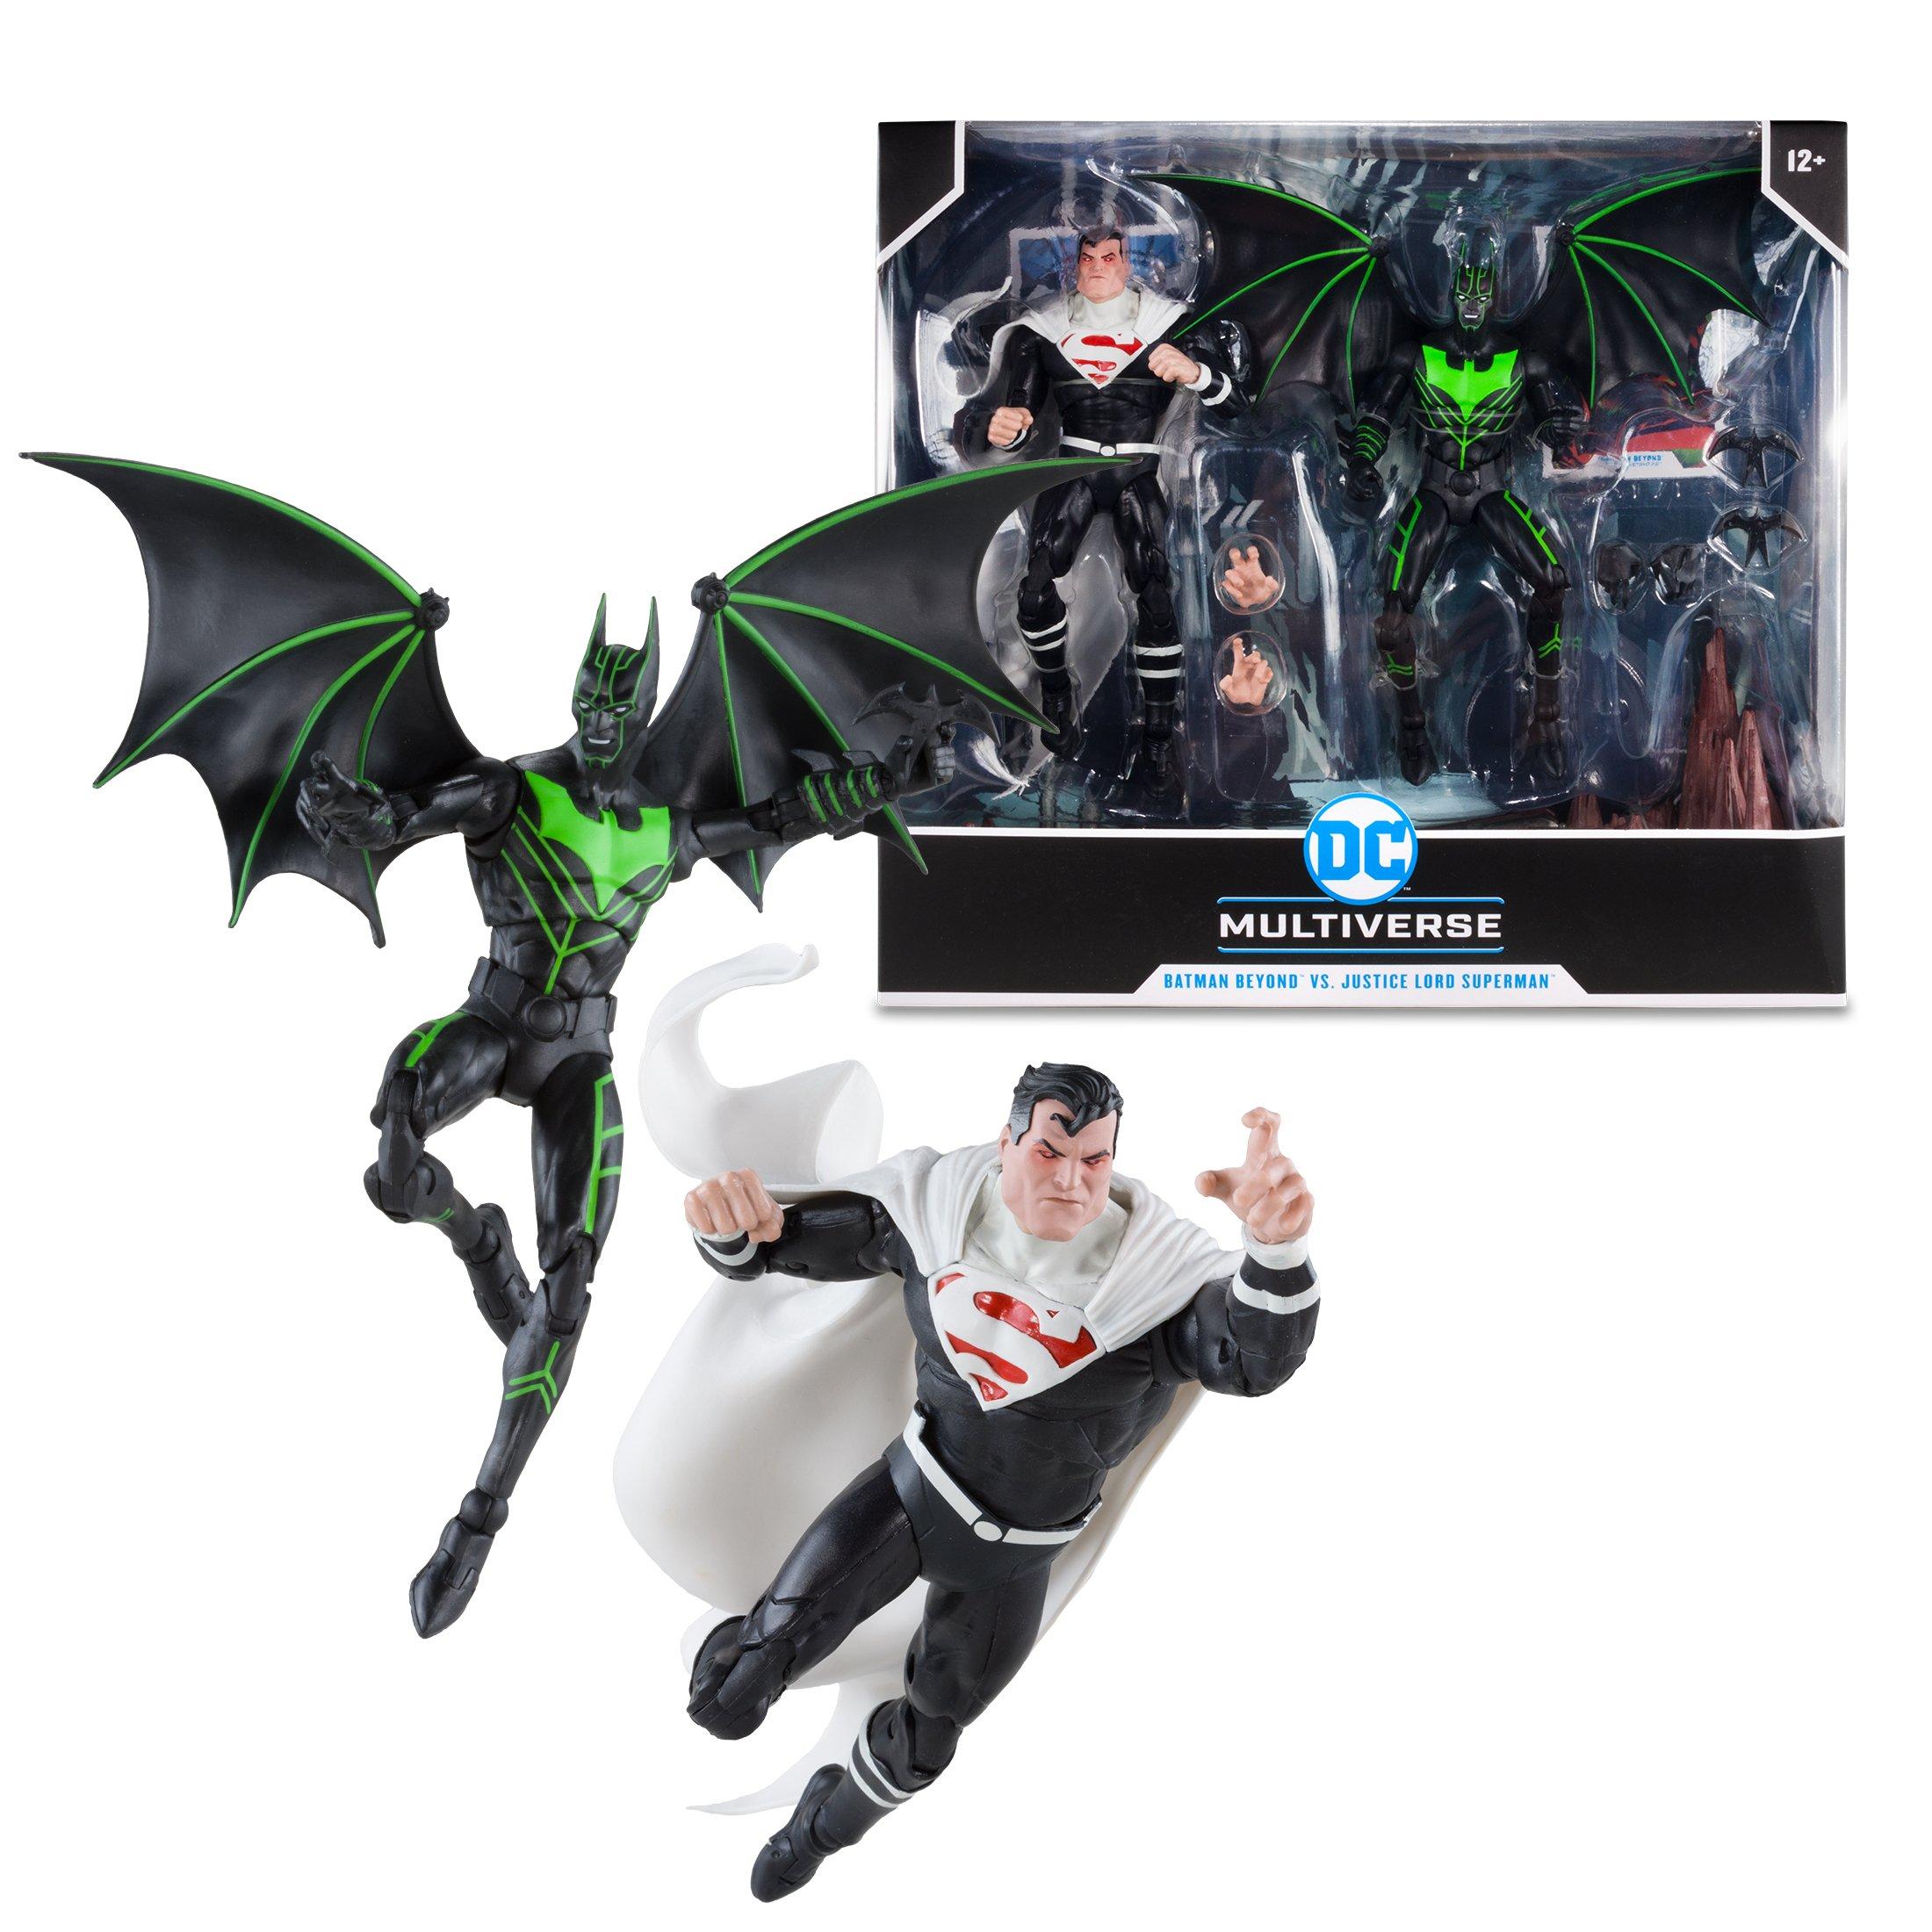 Batman Beyond figurine Batman Beyond DC Multiverse McFarlane Toys